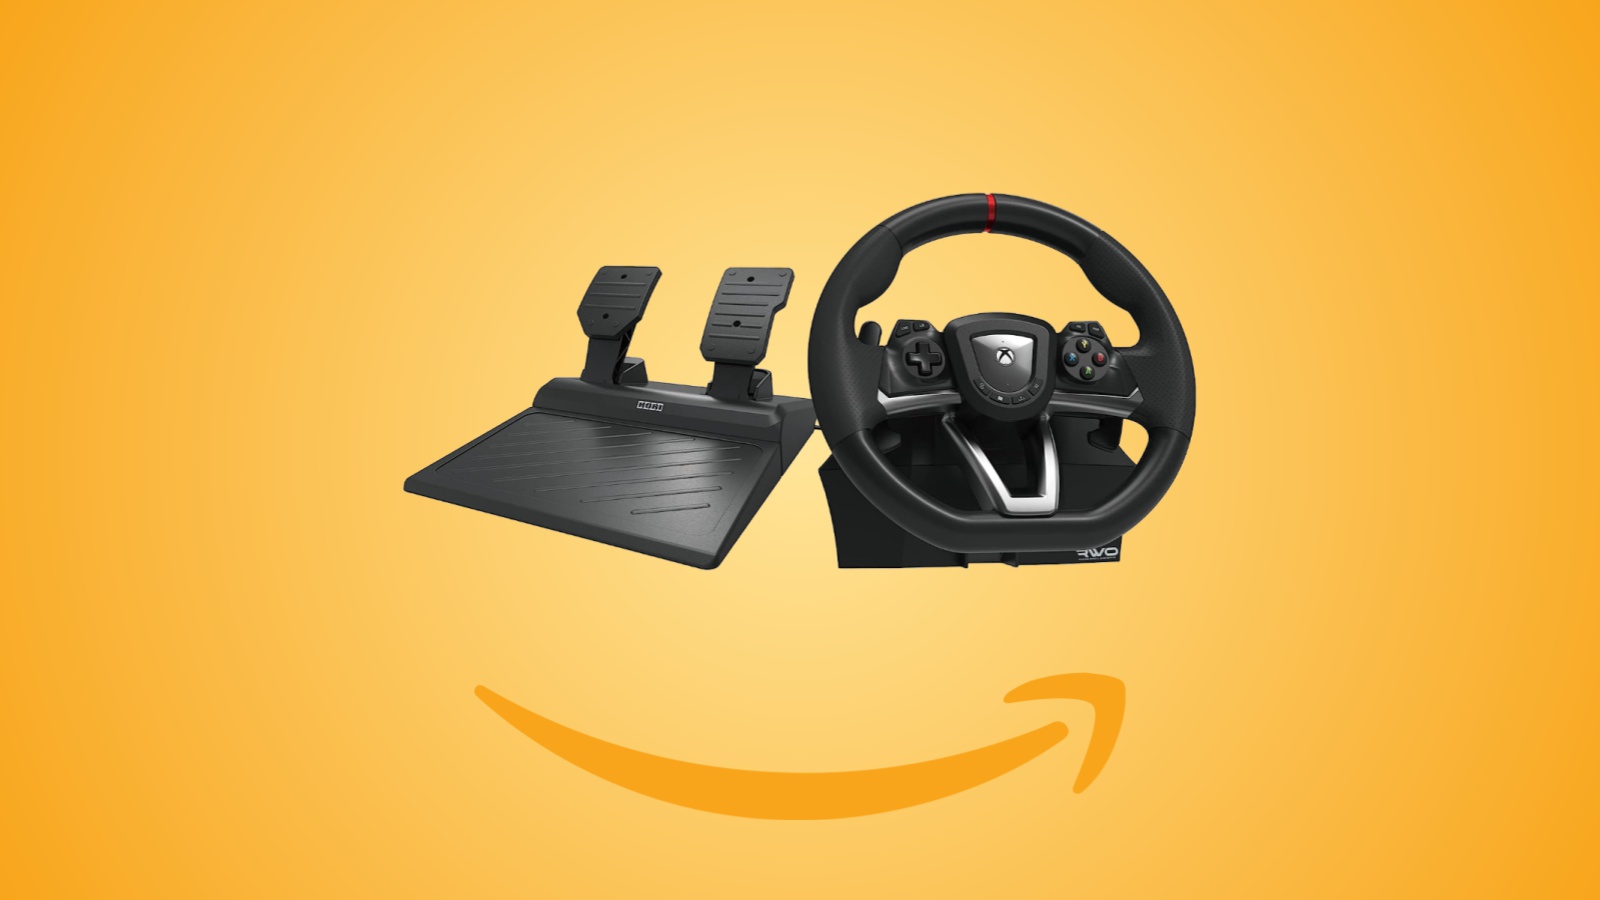 Offerte Amazon: volante Hori Rwo Racing Wheel Overdrive per PC e Xbox al prezzo minimo storico